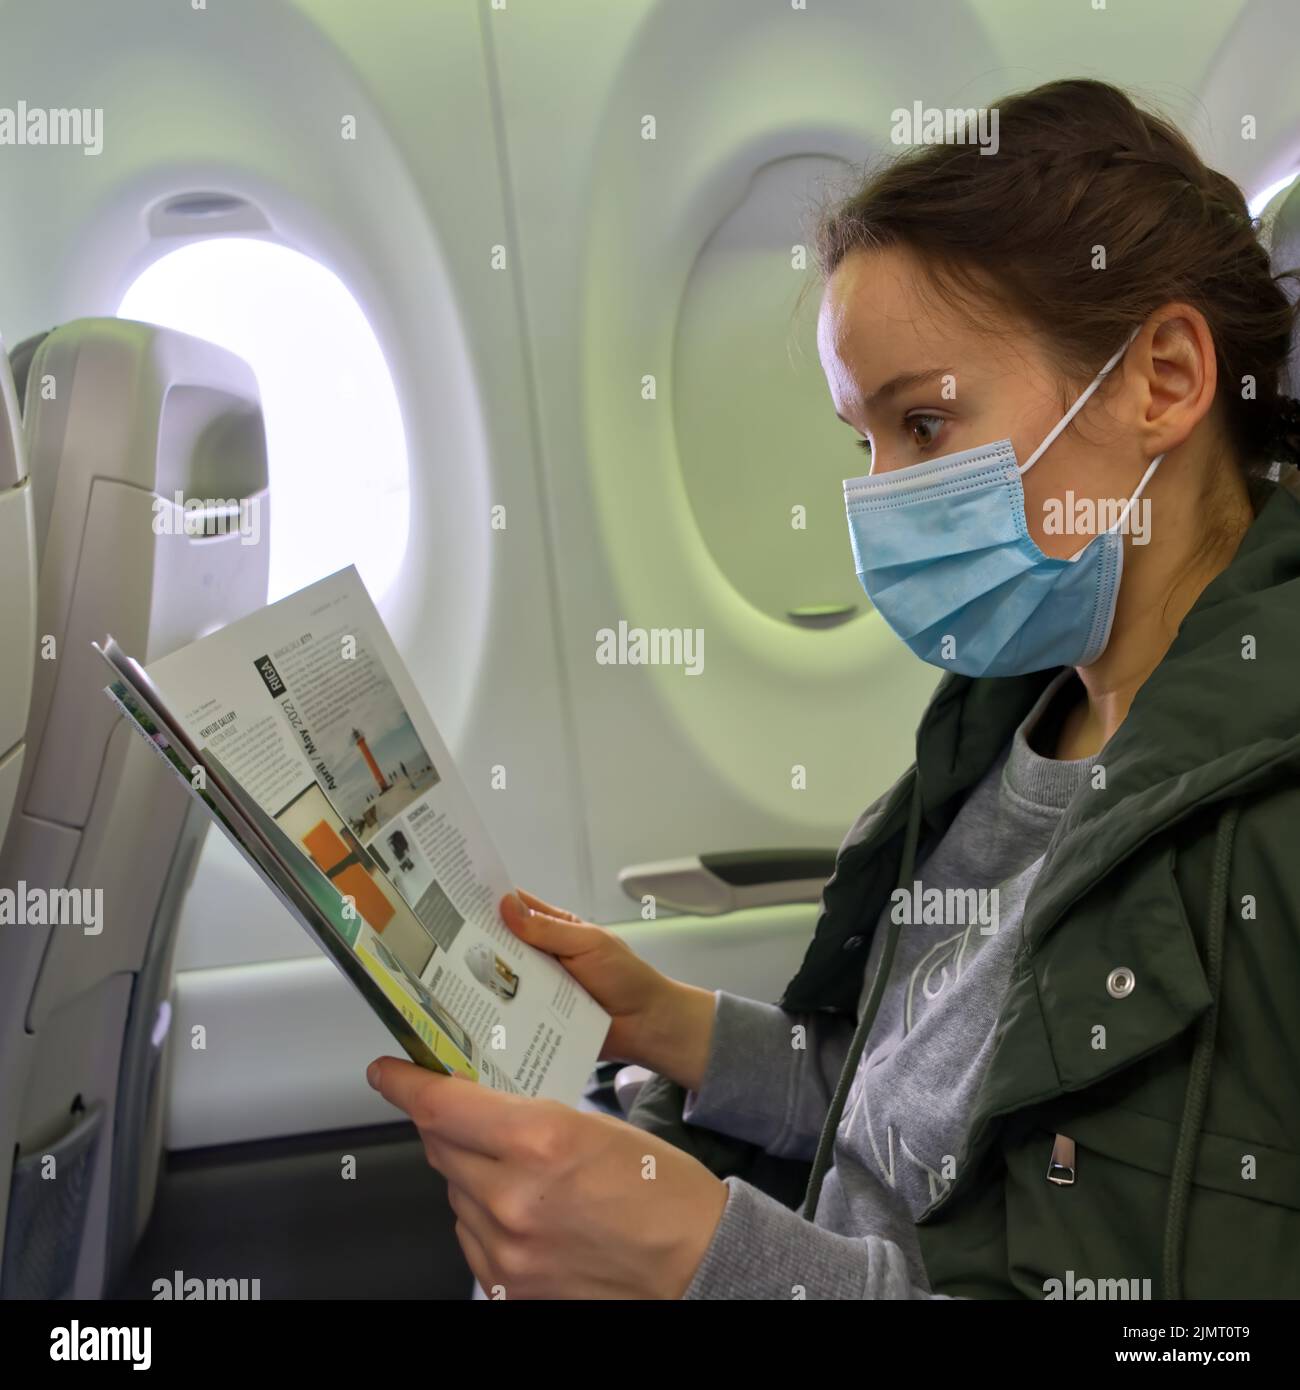 une femme voyageur portant un masque pour prévenir l'infection par le covid-19 lorsqu'elle voyage dans un avion pour regarder un magazine Banque D'Images